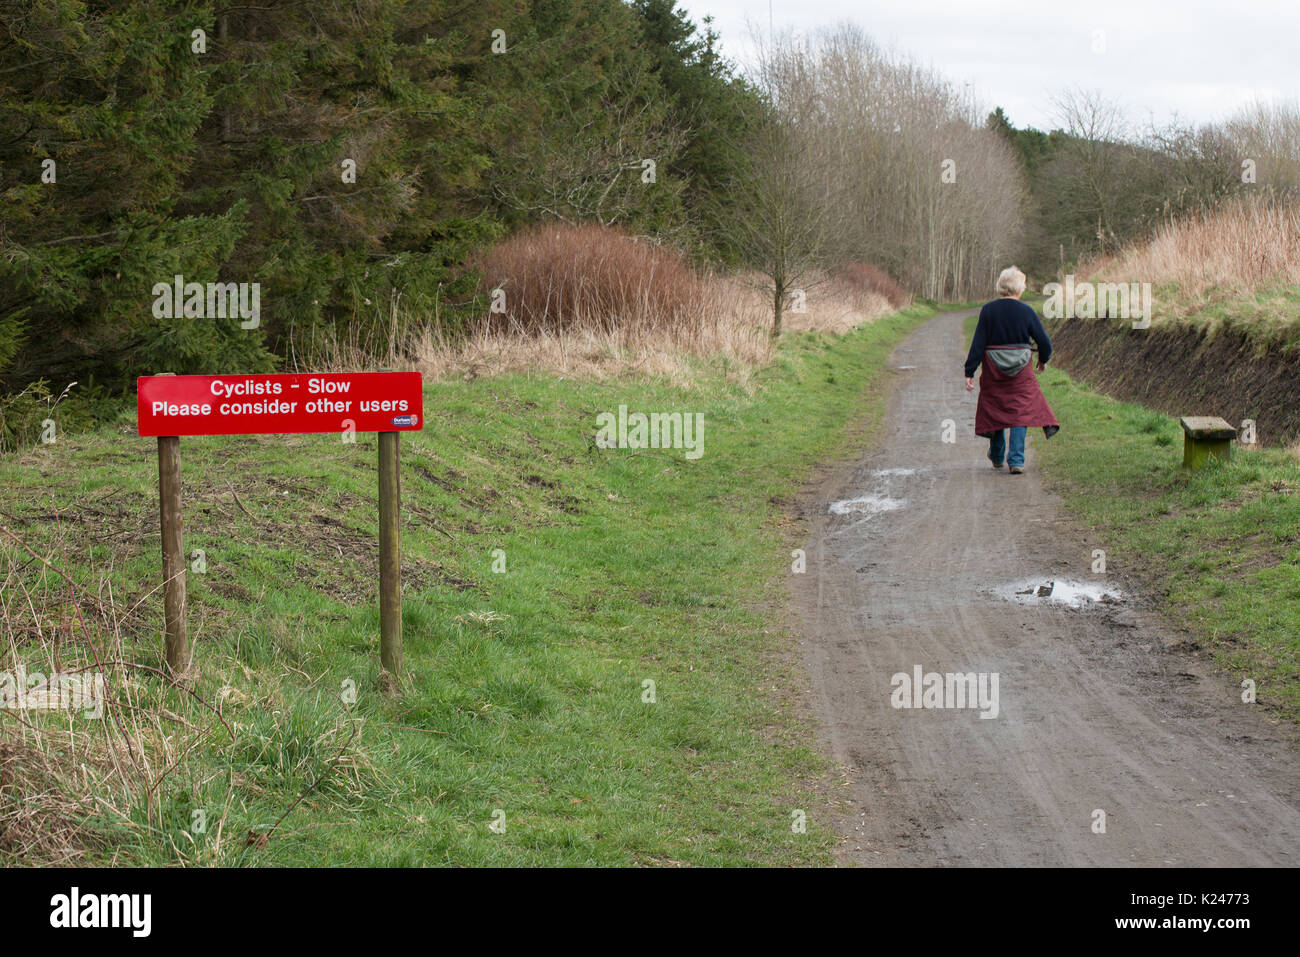 Percorso pubblico in campagna mostrando uno camminatore e avviso con richiesta ai ciclisti di considerare altri utenti di percorso Foto Stock